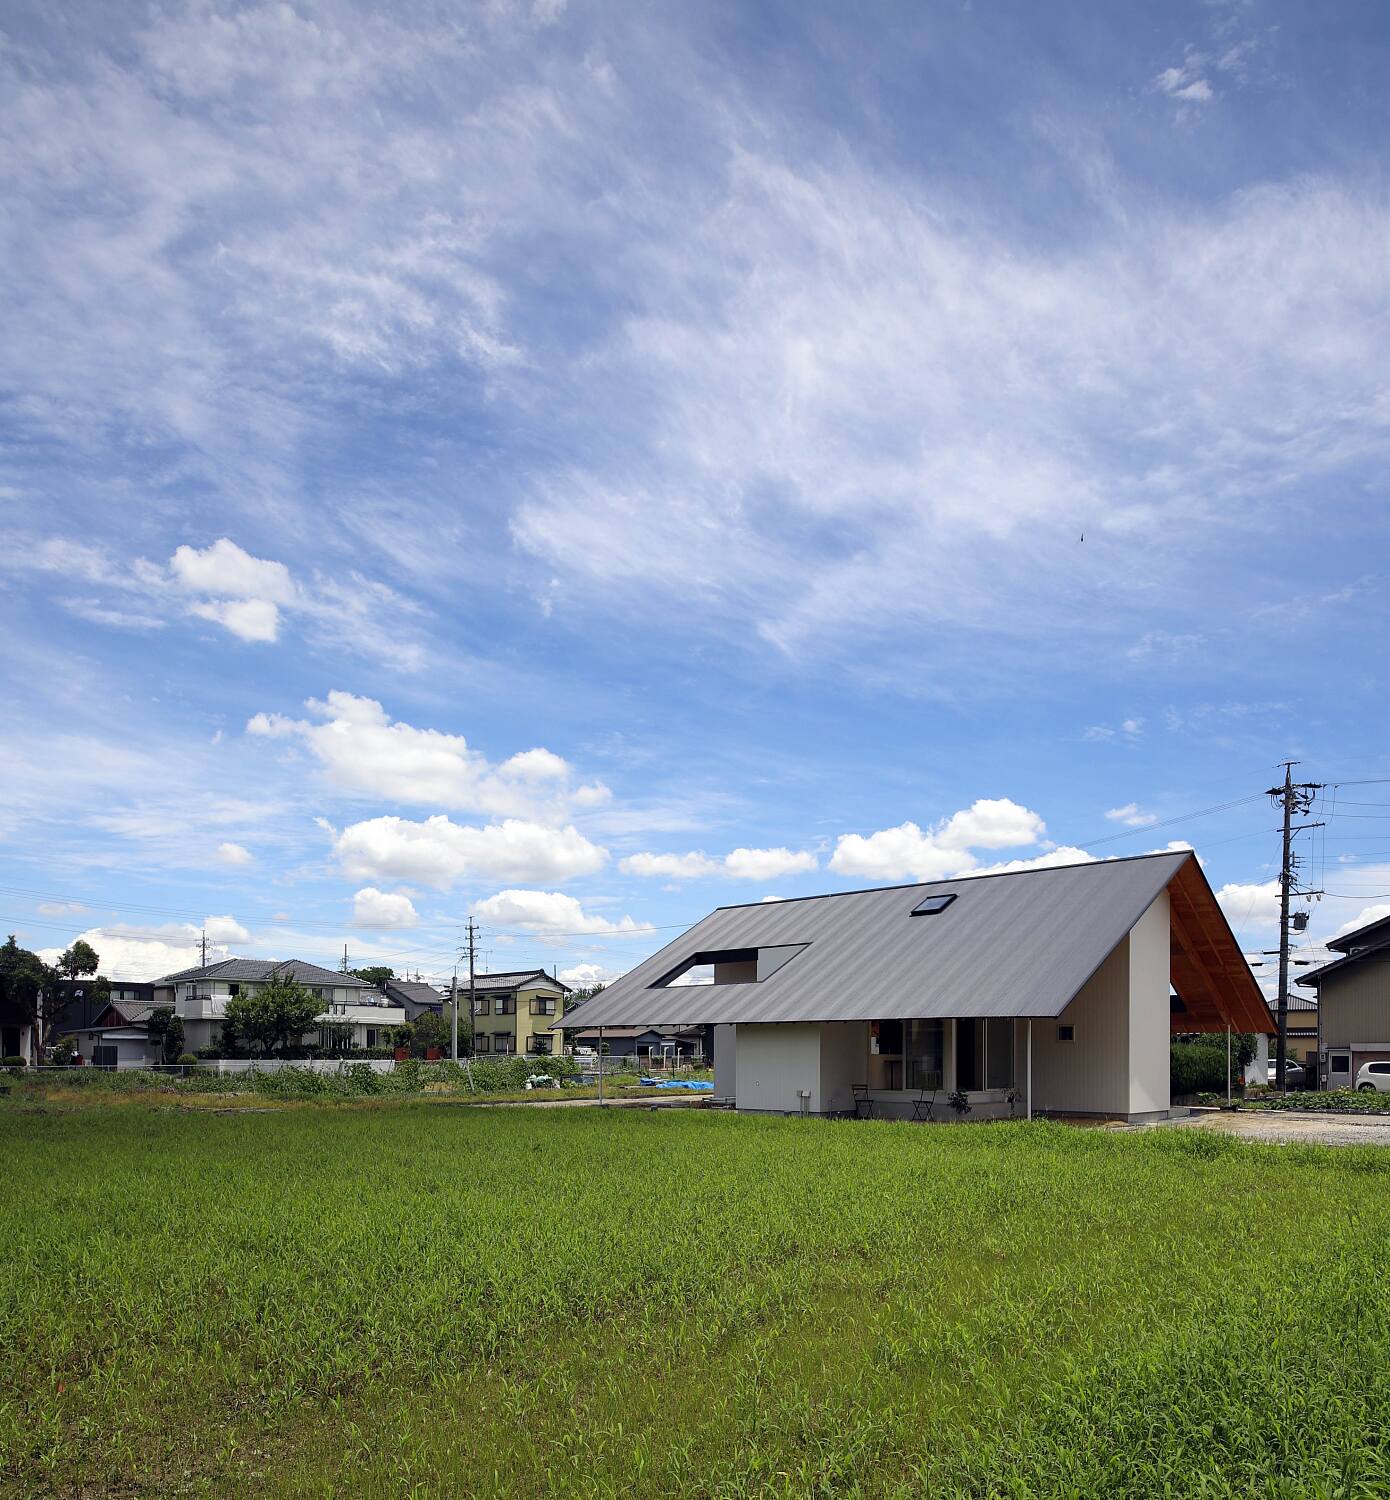 Kasa House by Katsutoshi Sasaki + Associates